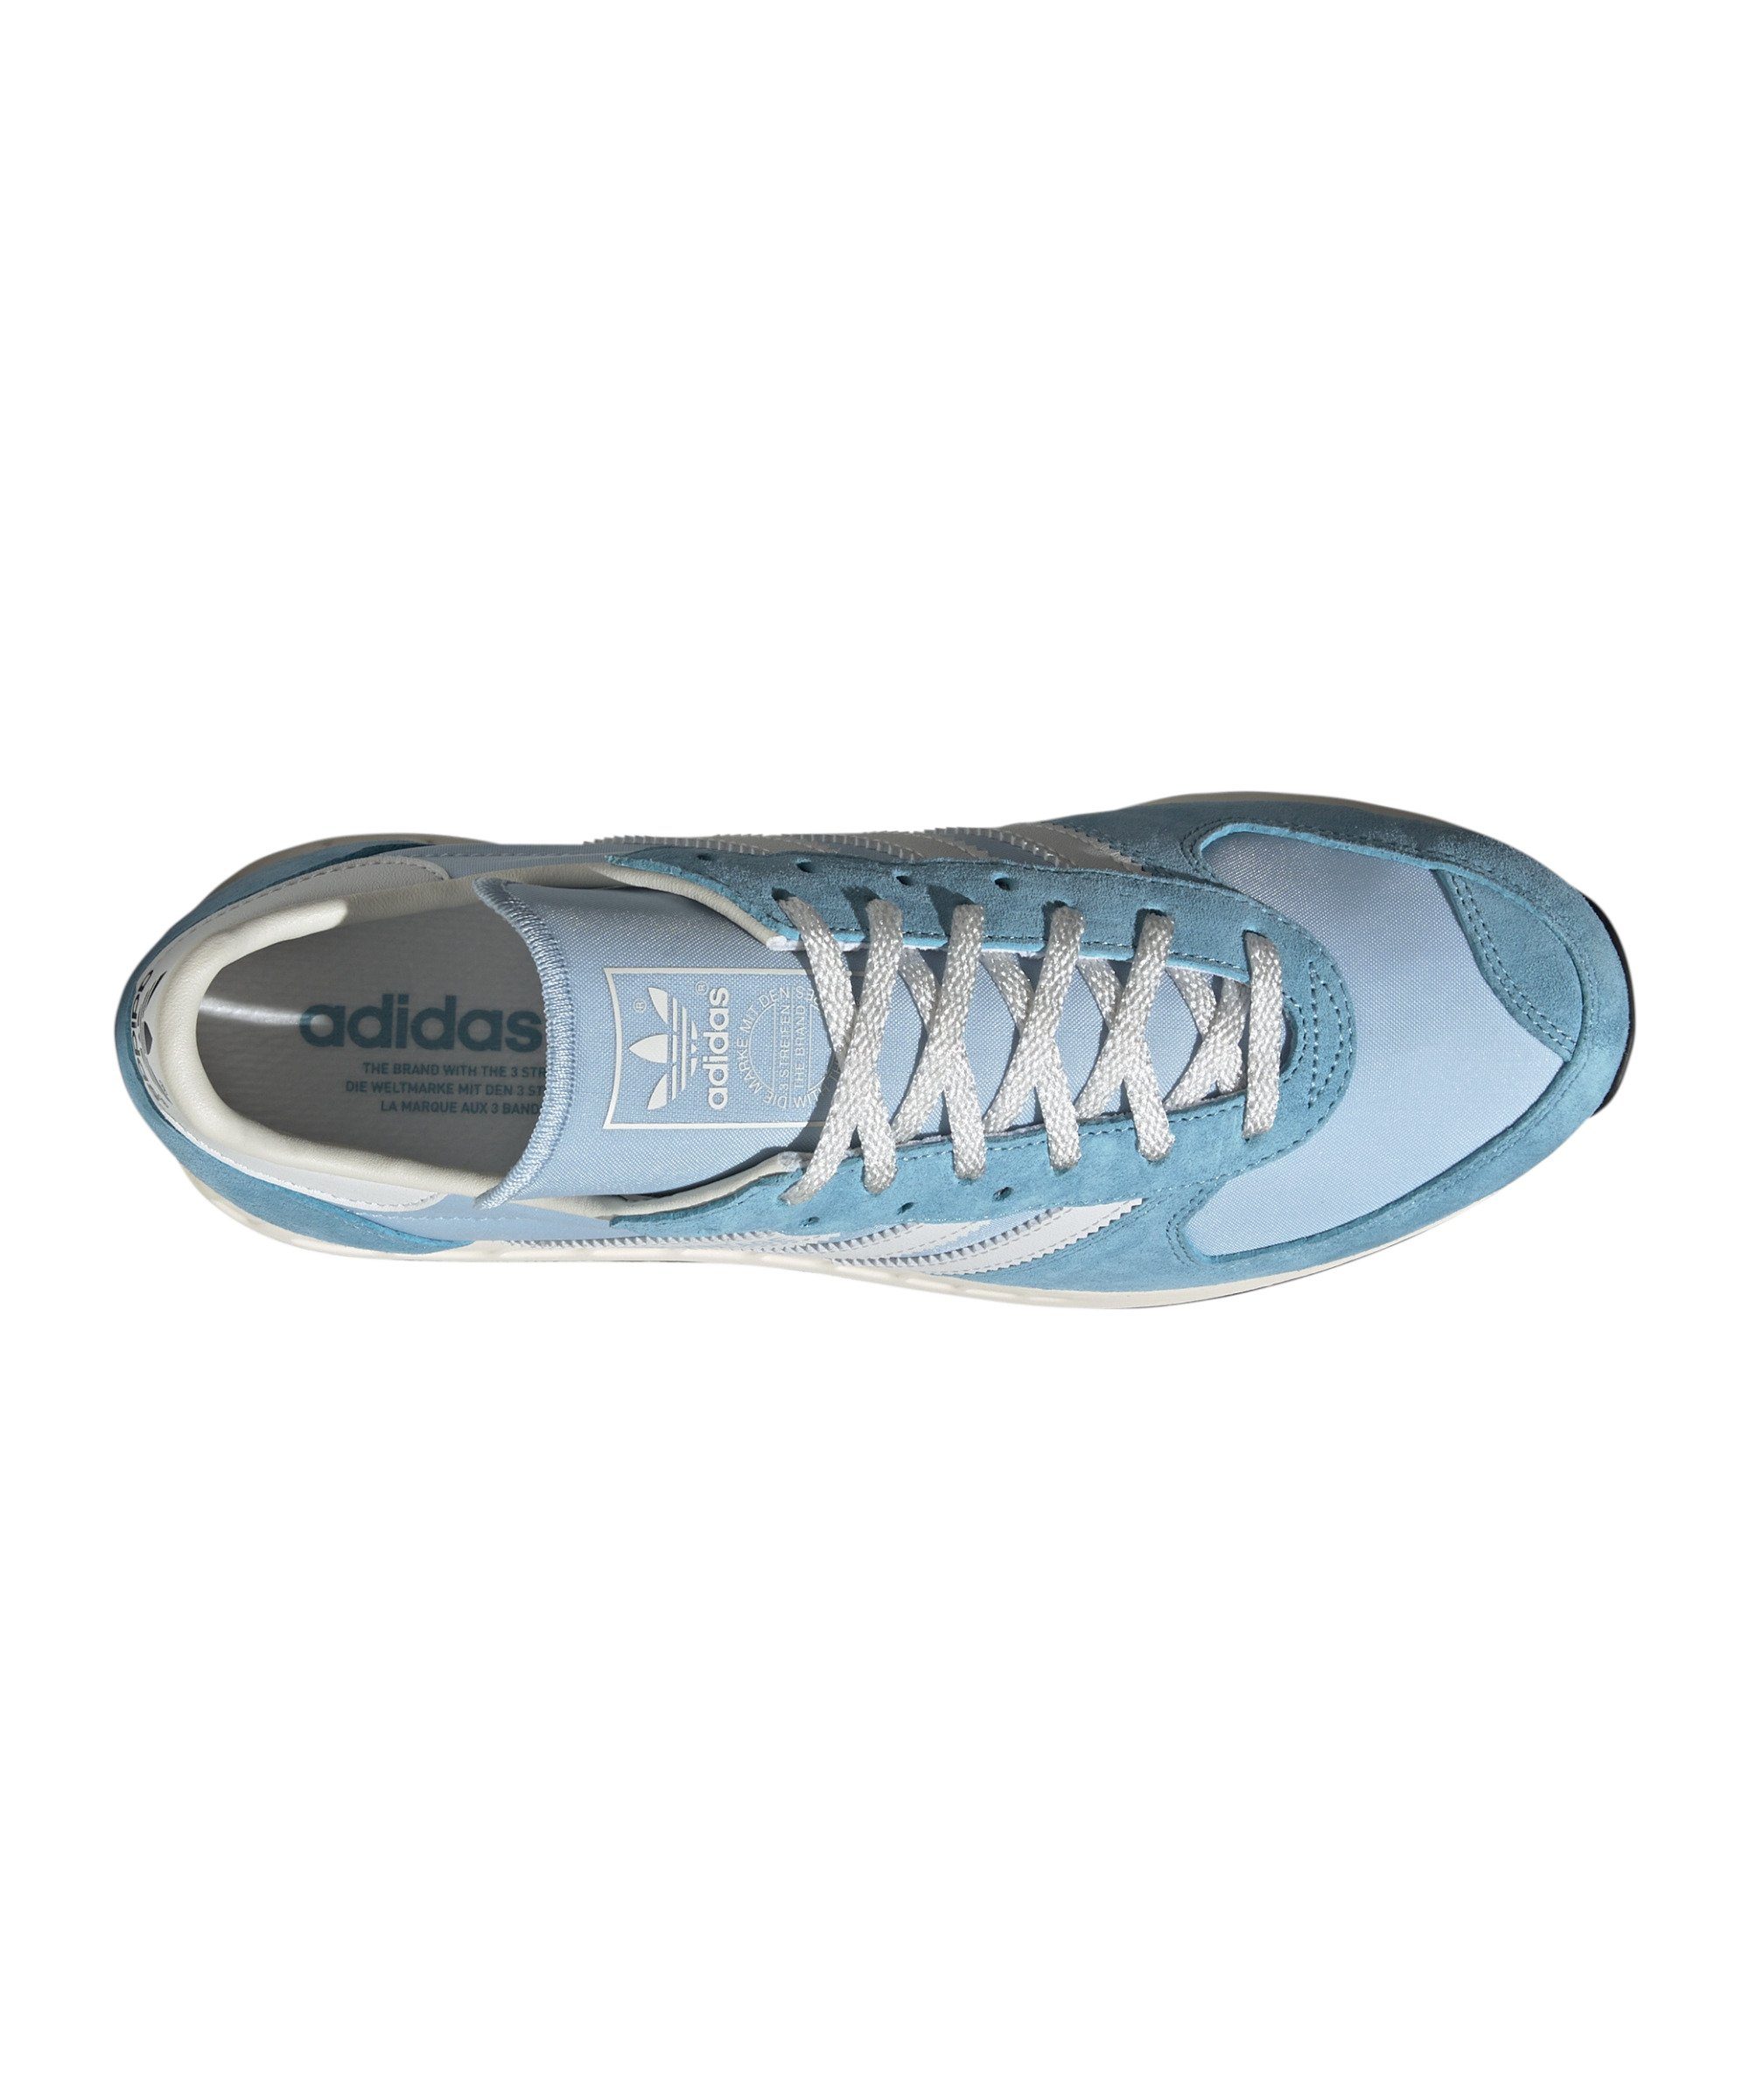 adidas blaublau Vintage TRX Sneaker Beige Originals